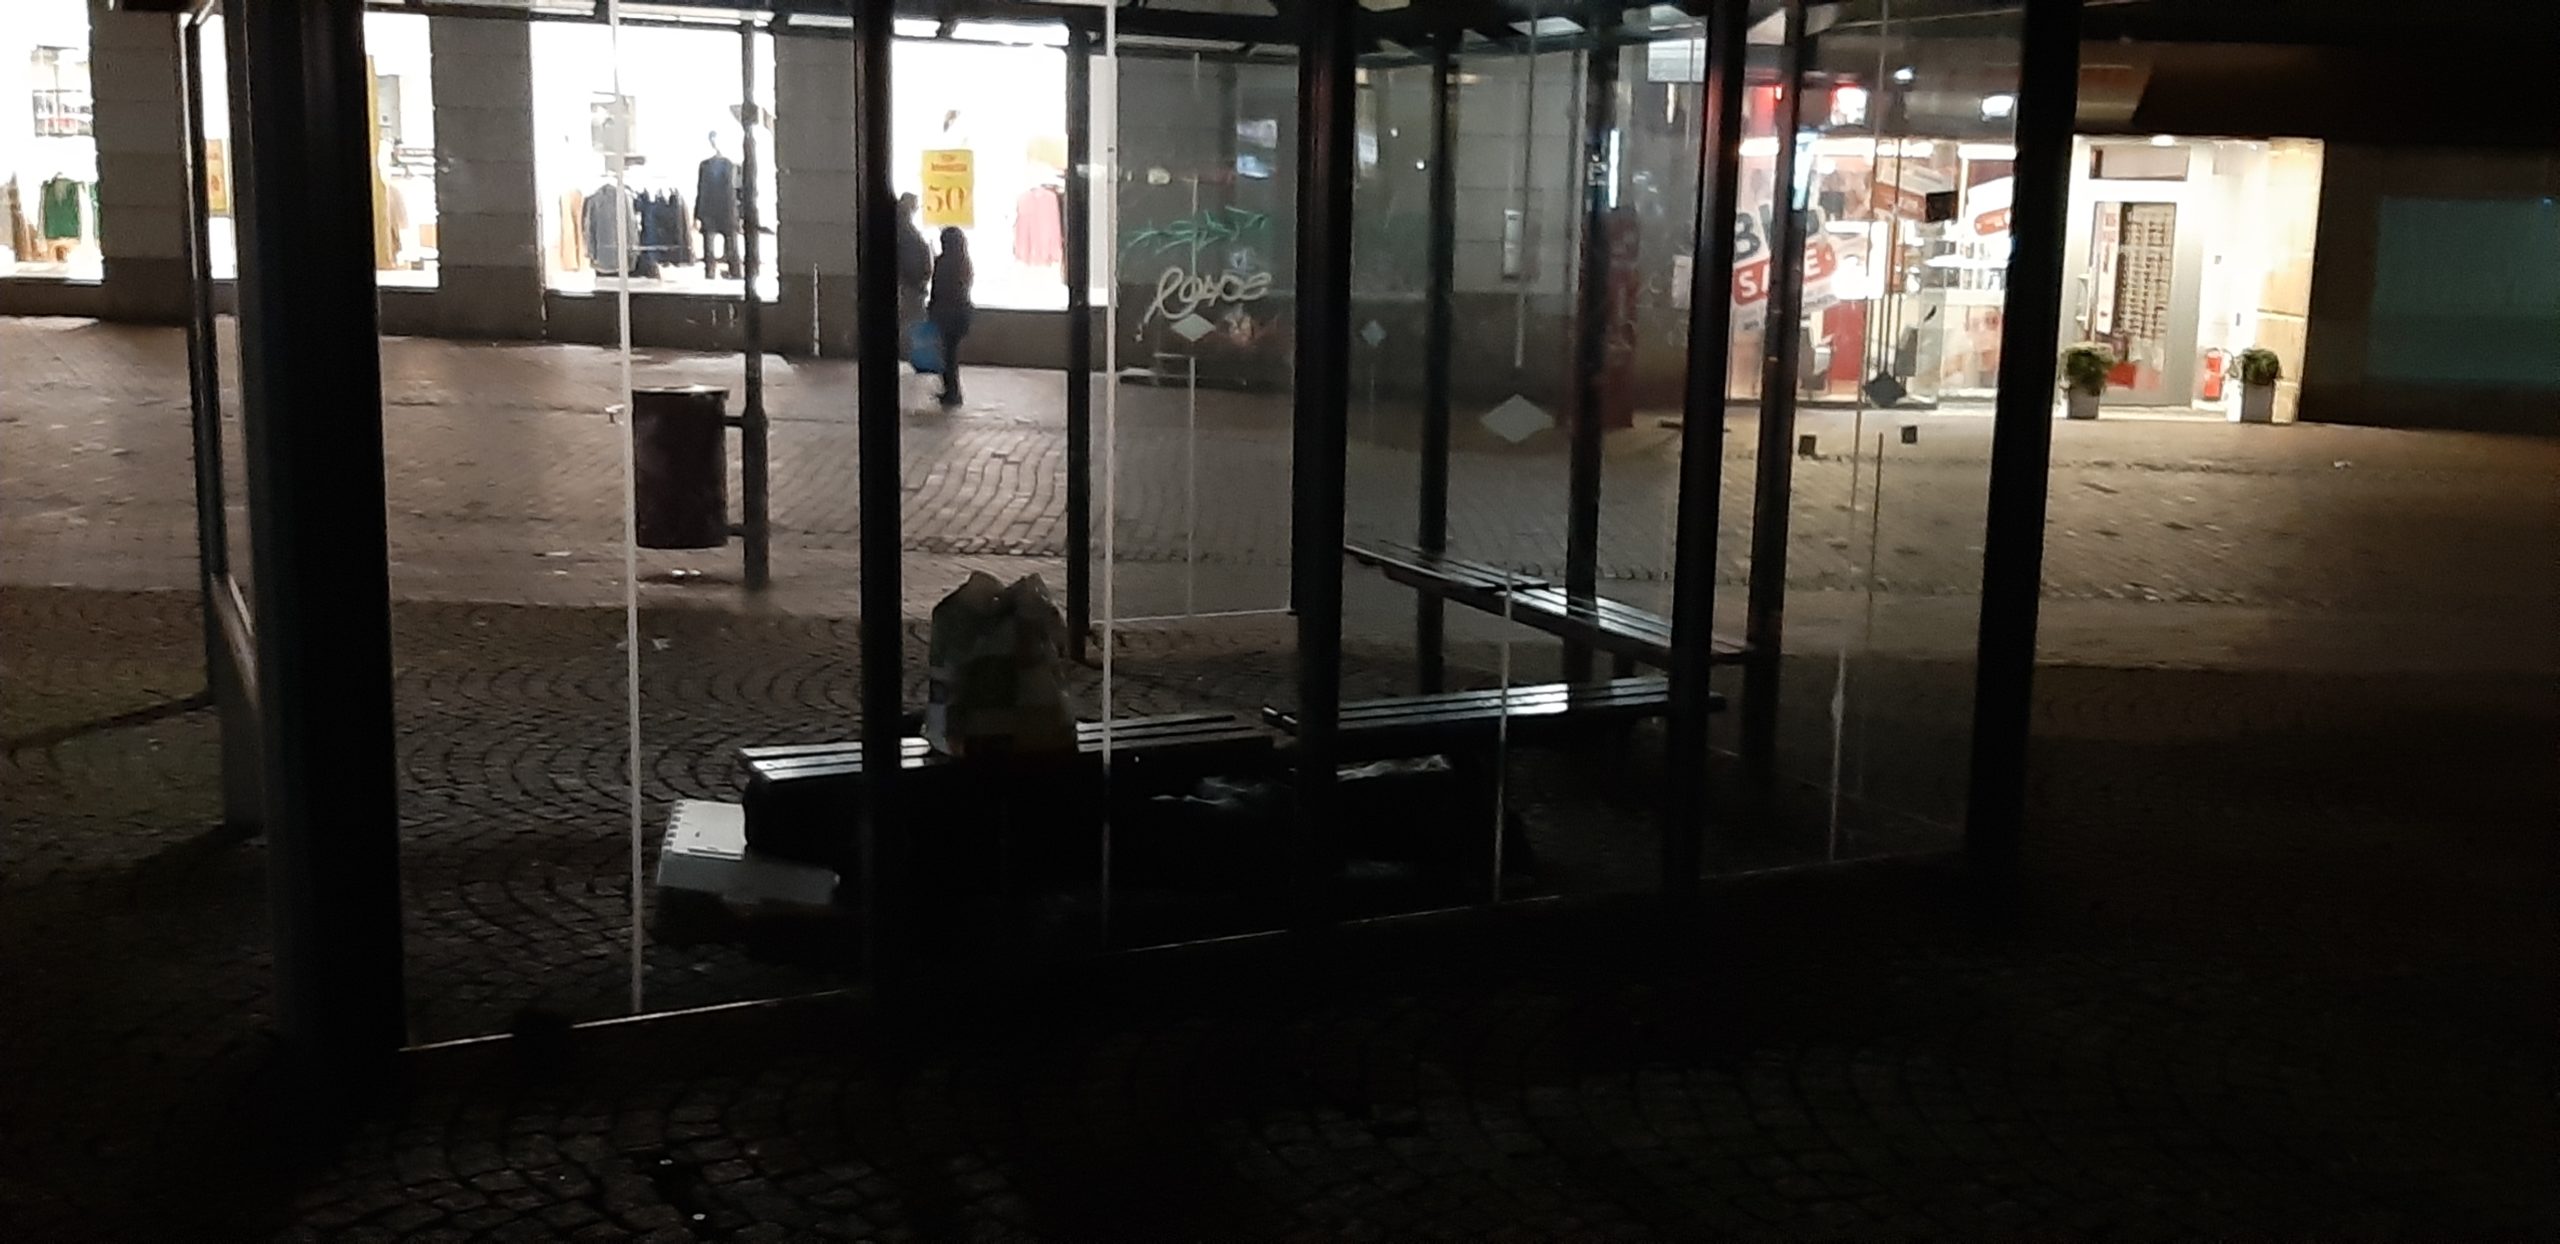 Einsame-kalte-Schlafstatt-auf-Unnas-Rathausplatz-Man-kann-Hilfe-anbieten-aber-nicht-aufzwingen-